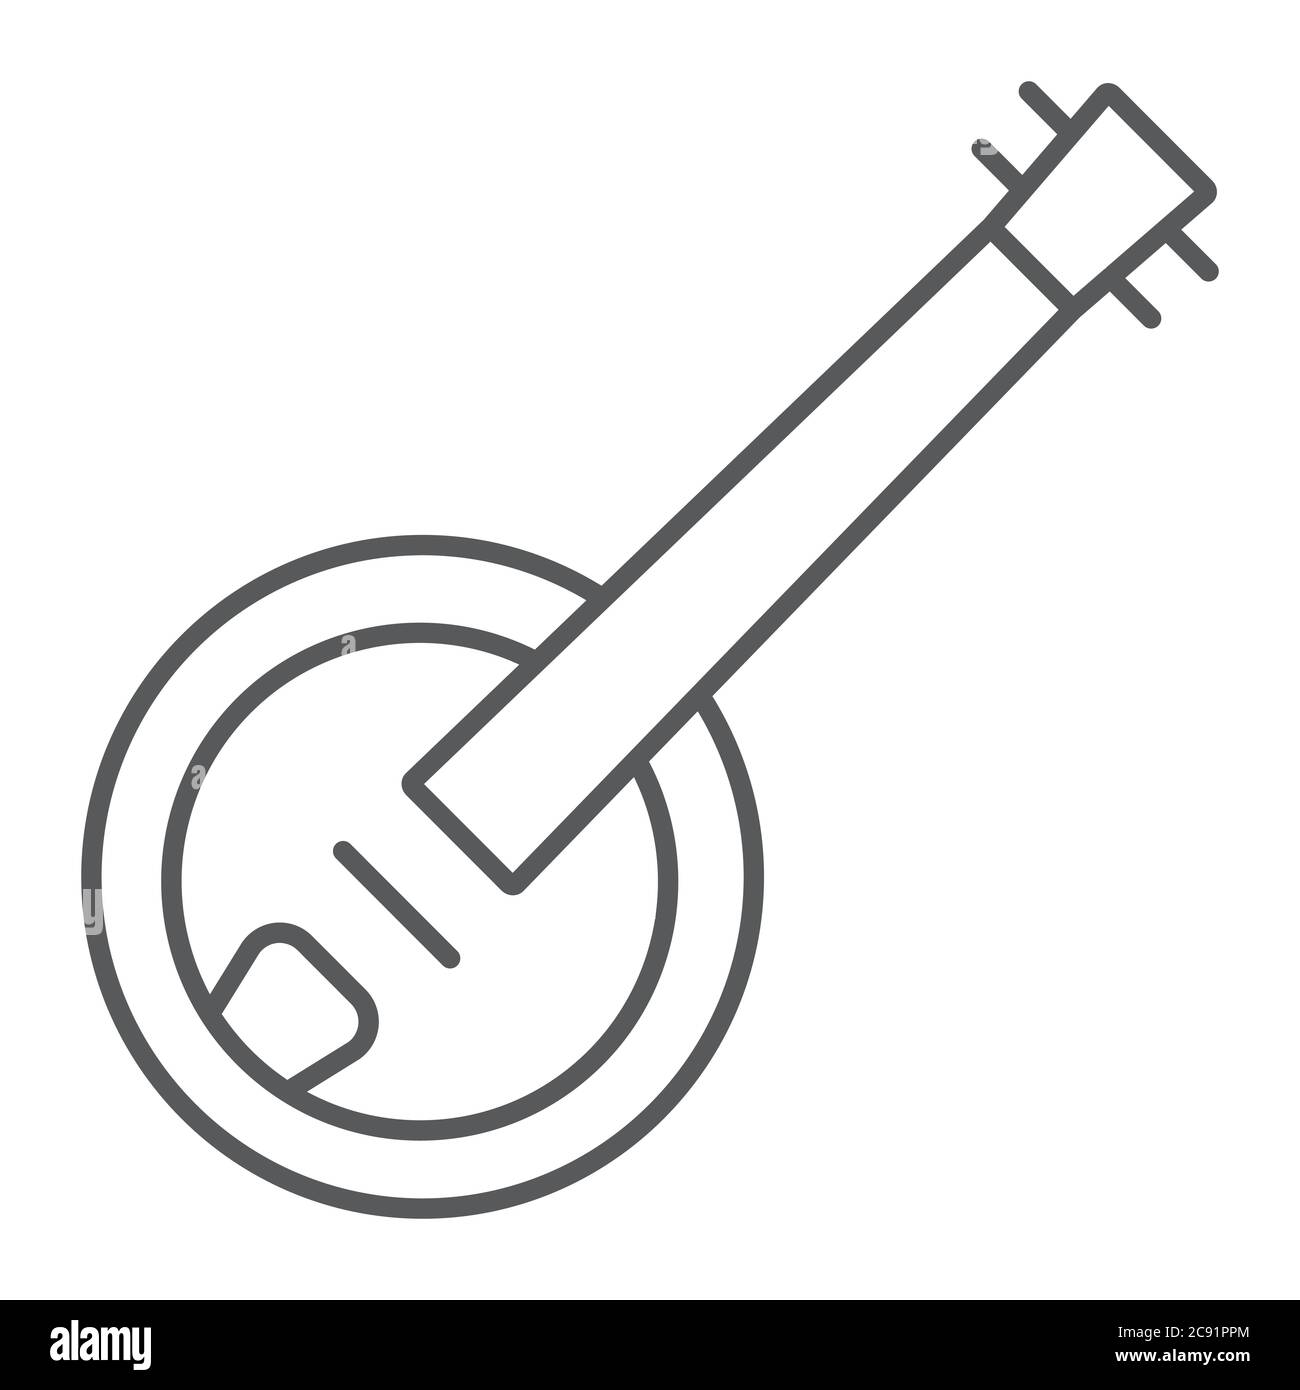 Icona banjo sottile linea, musica e stringa, segno folk strumento musicale, grafica vettoriale, un motivo lineare su uno sfondo bianco. Illustrazione Vettoriale